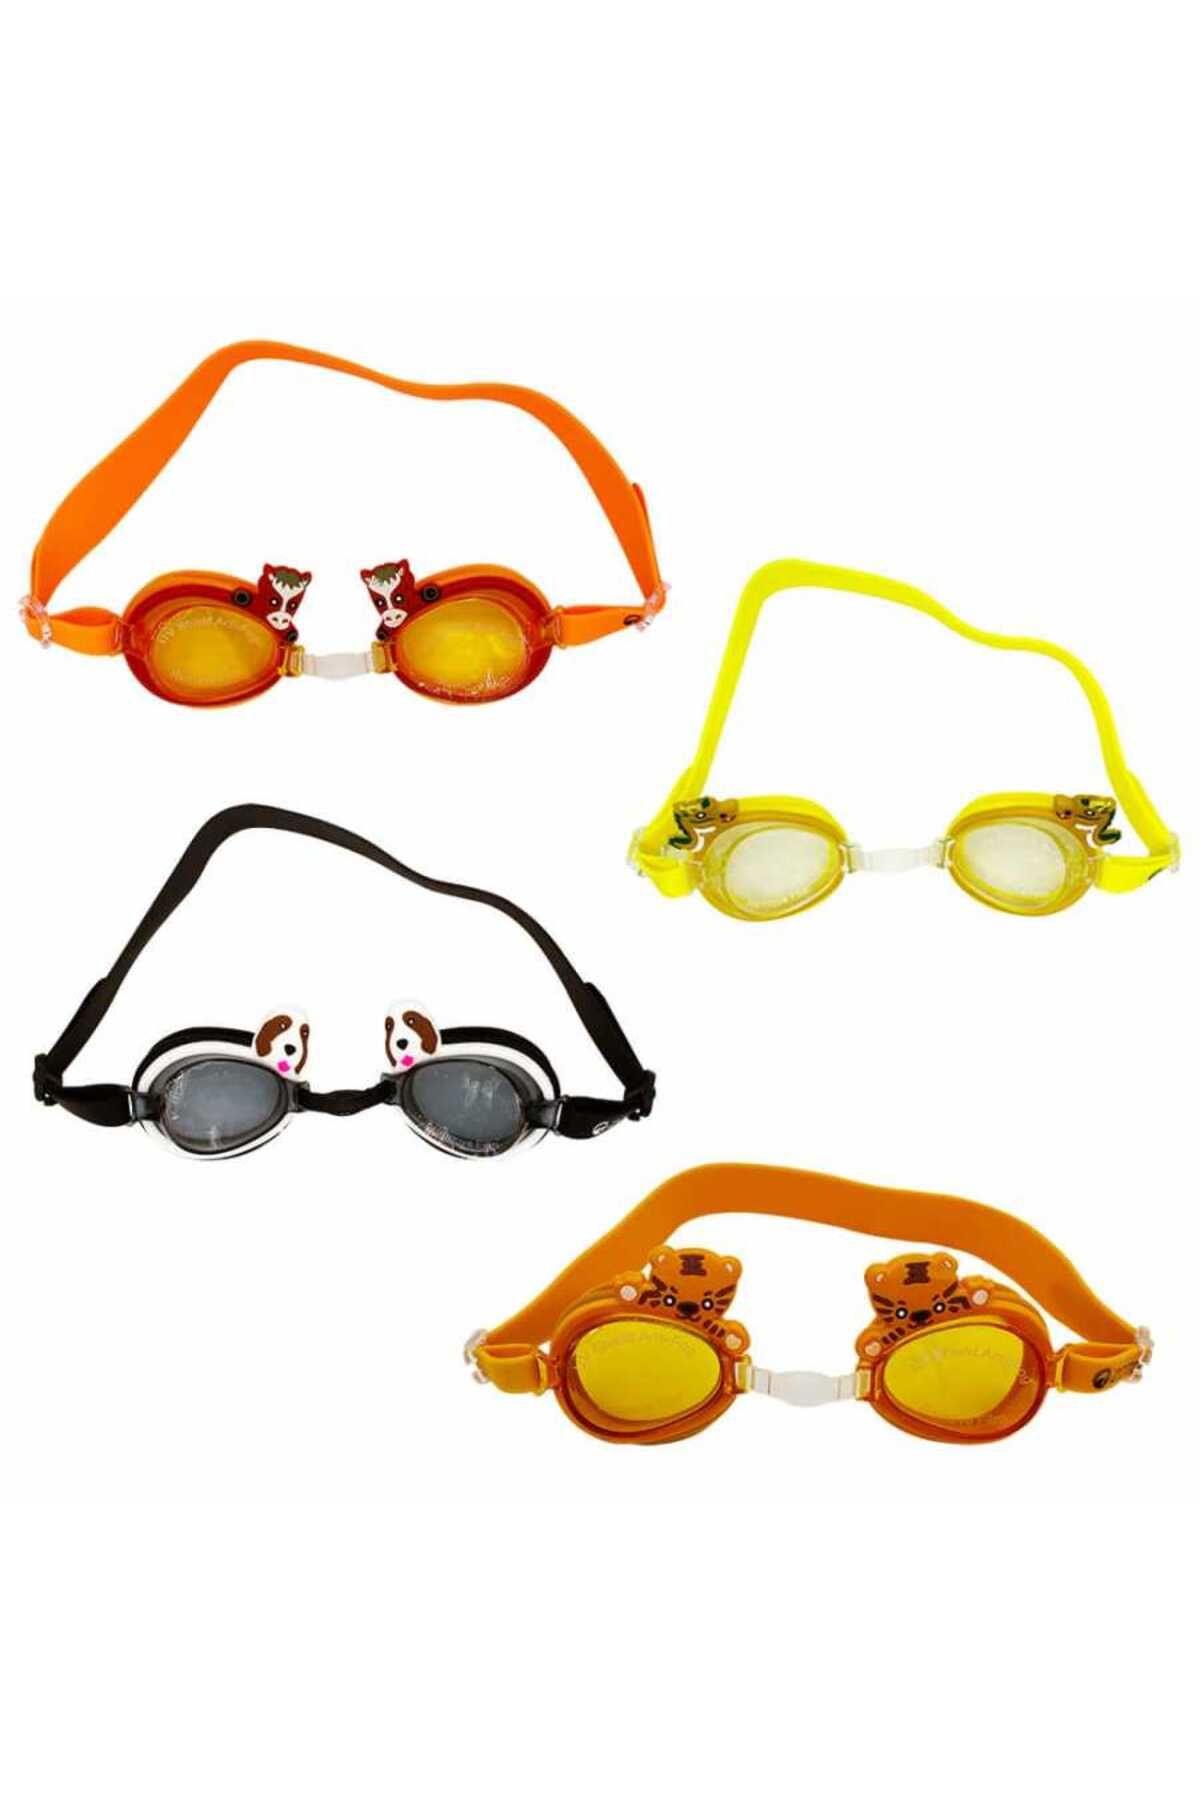 Zoto Çocuk Yüzücü Gözlüğü Zt4500 Assorted